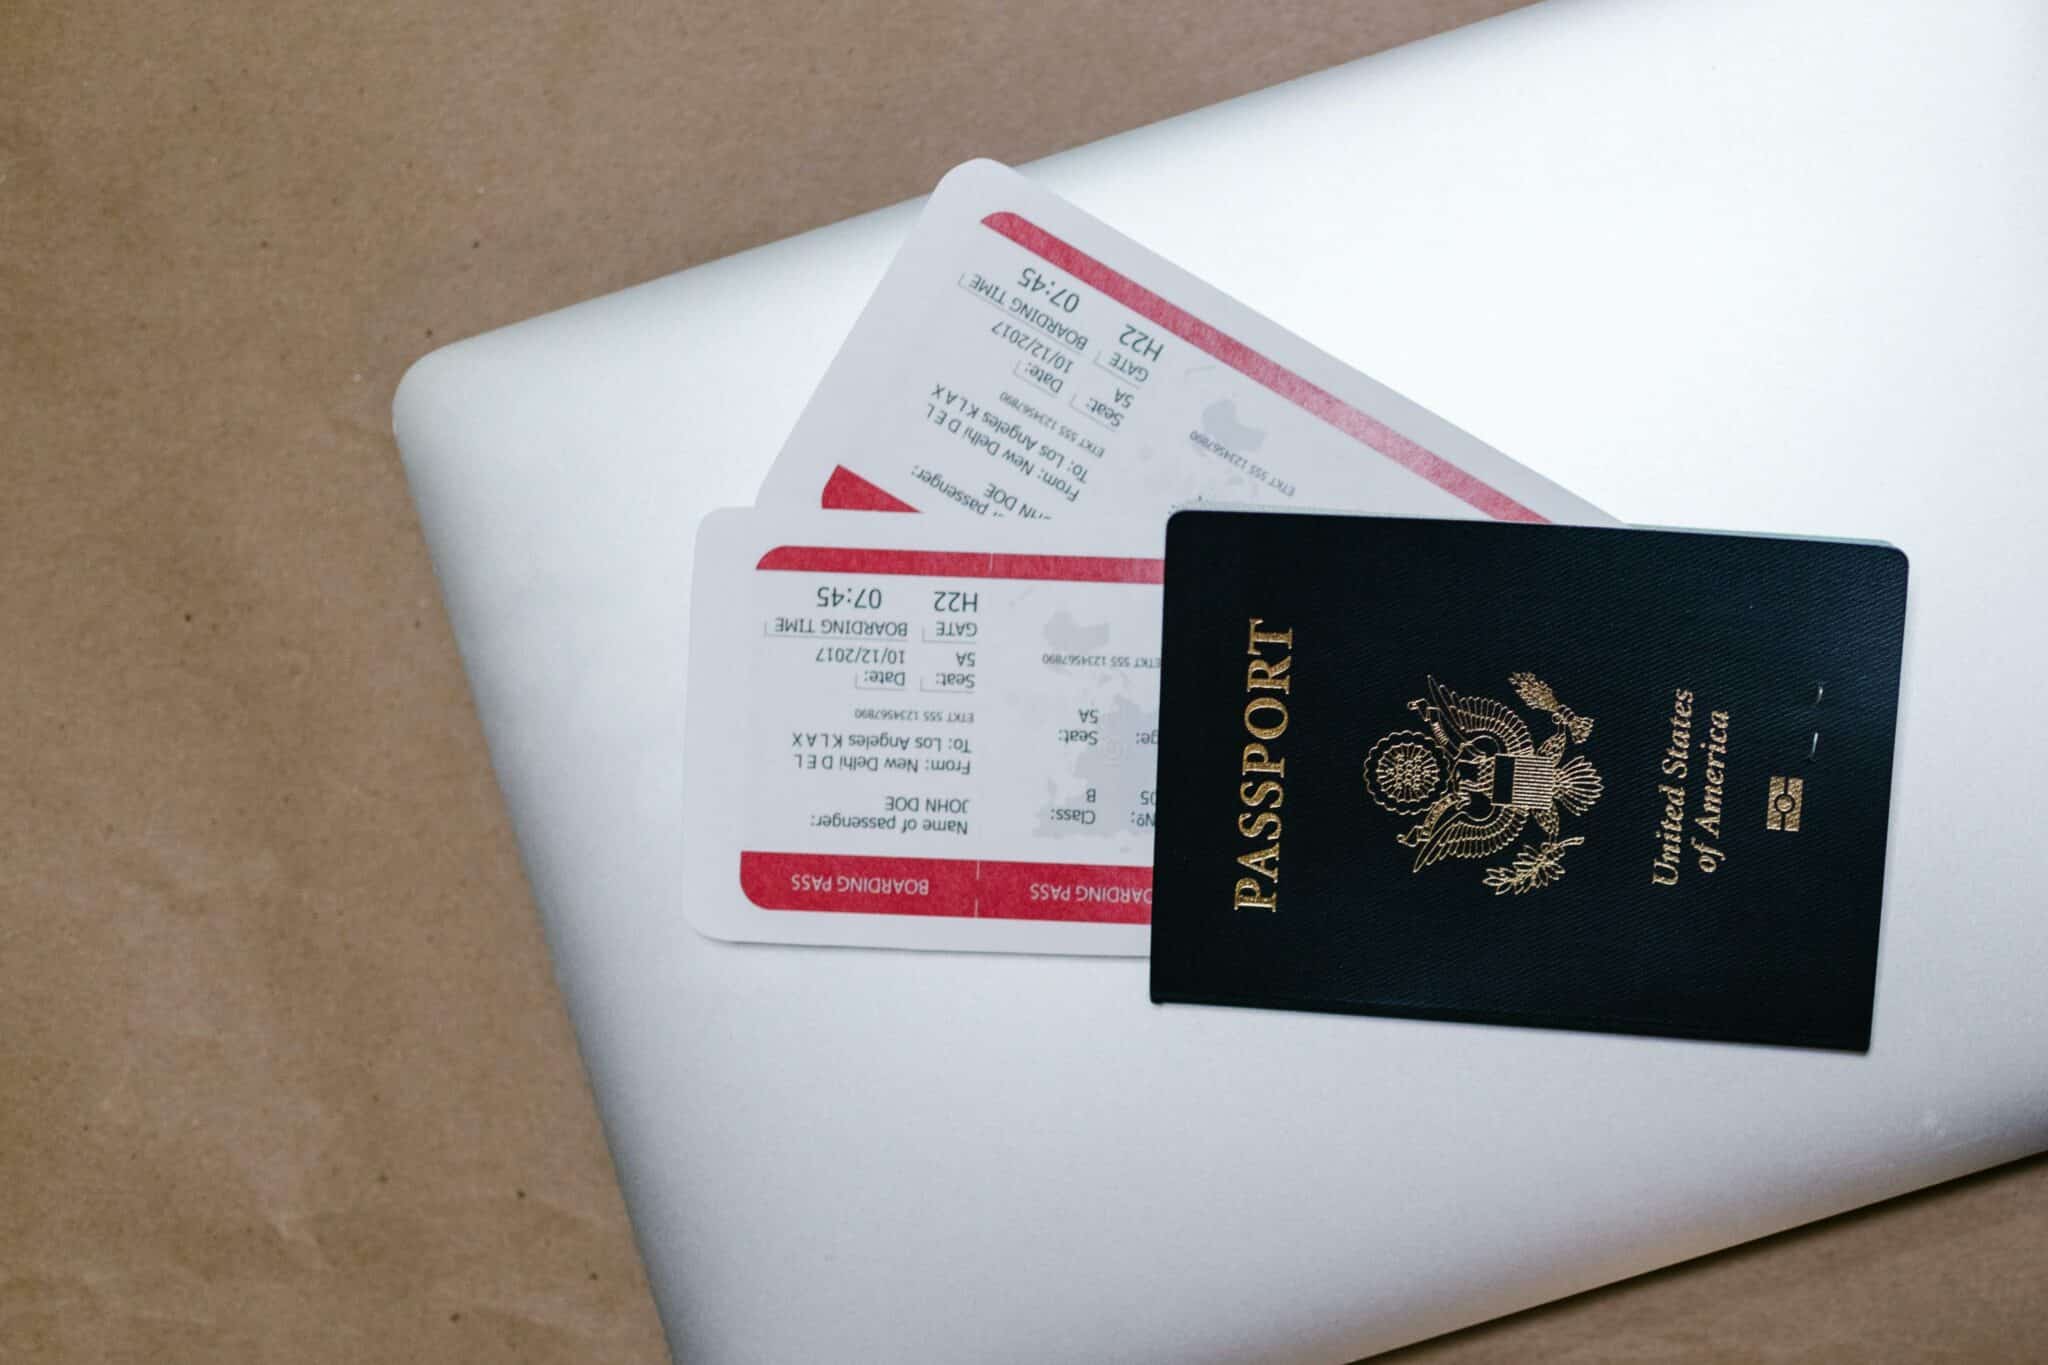 Revisa y Prepara Todos tus Documentos de Viaje para Evitar Contratiempos